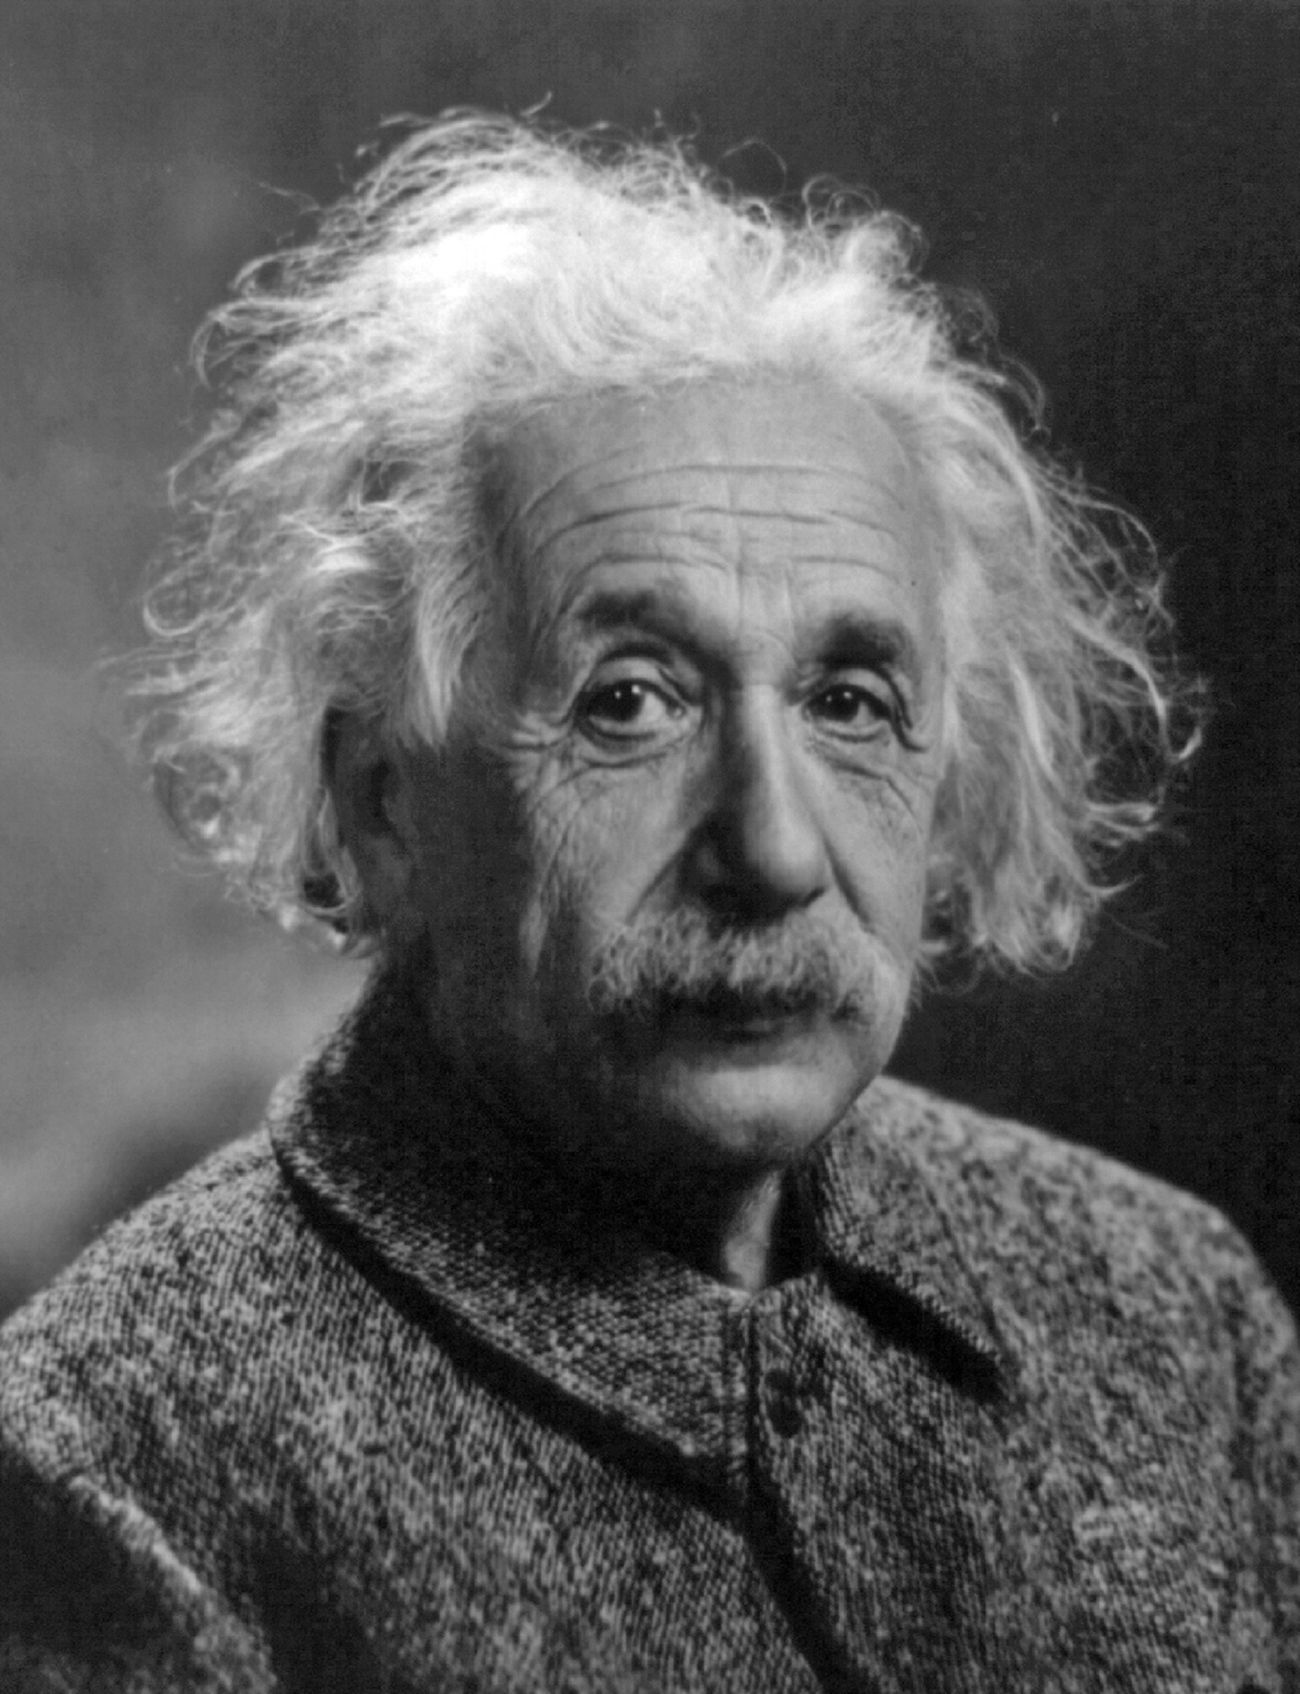 Albert Einstein portrait, famous physicist